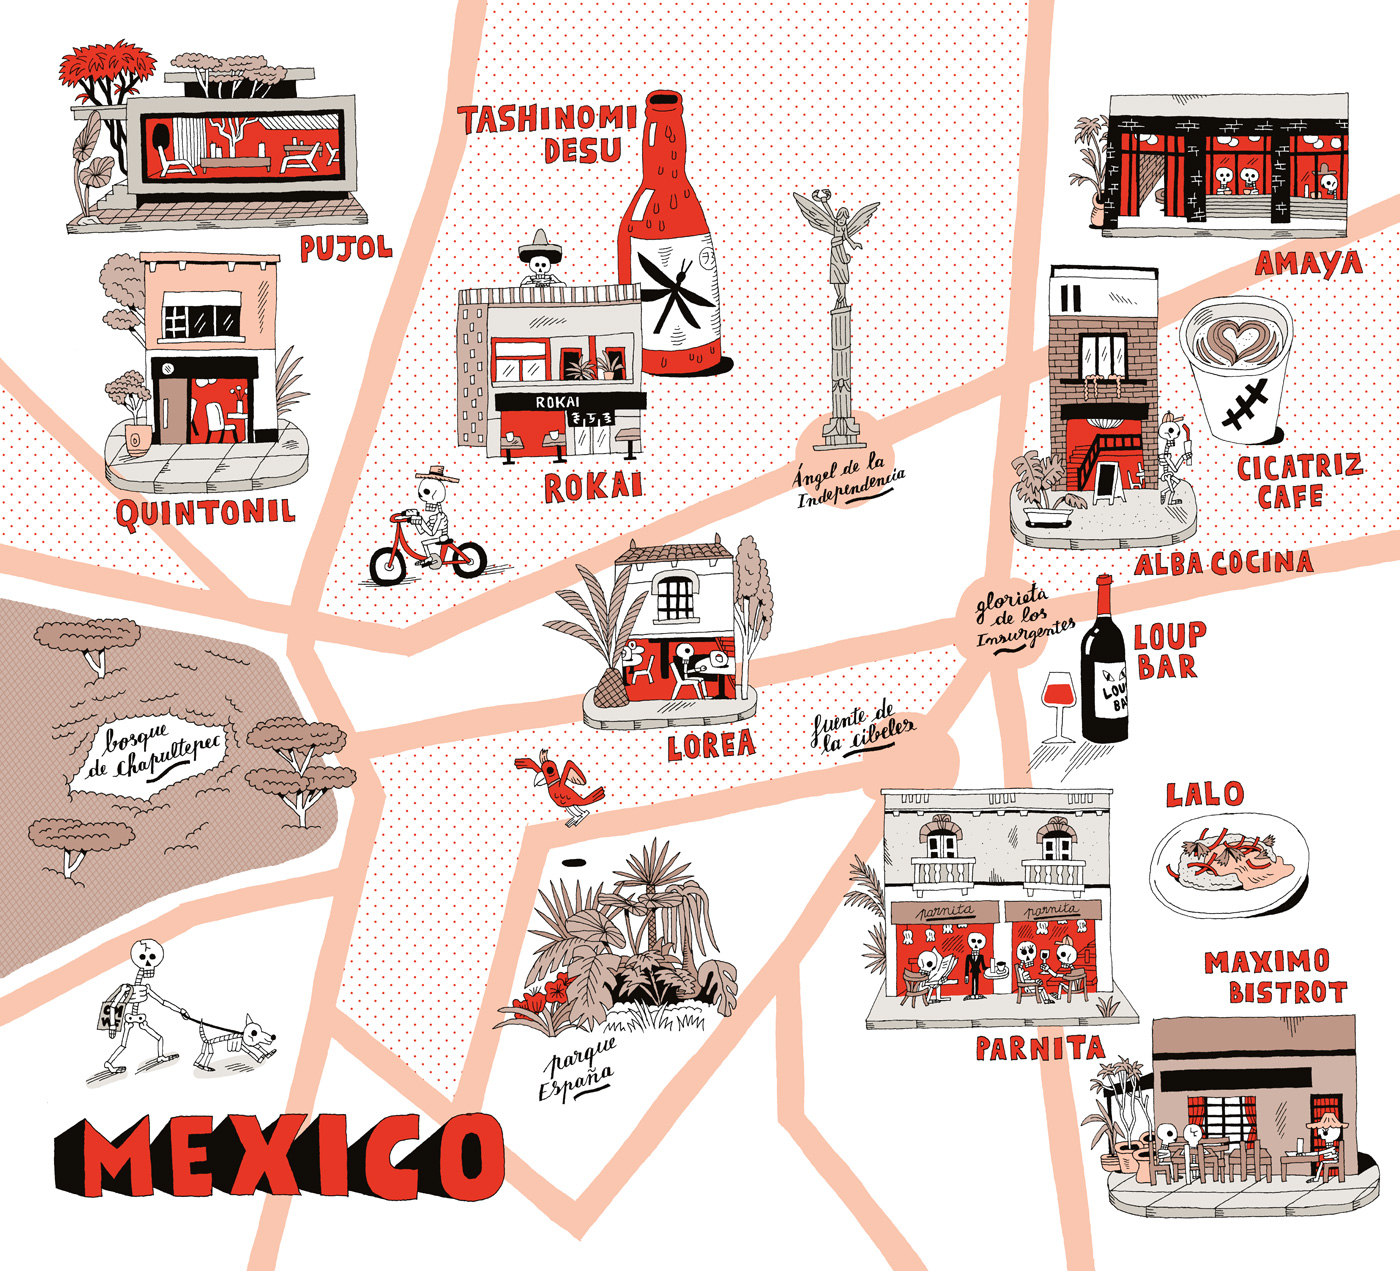 Carte illustrée de Mexico par Estocafich pour la revue Food book Omnivore,